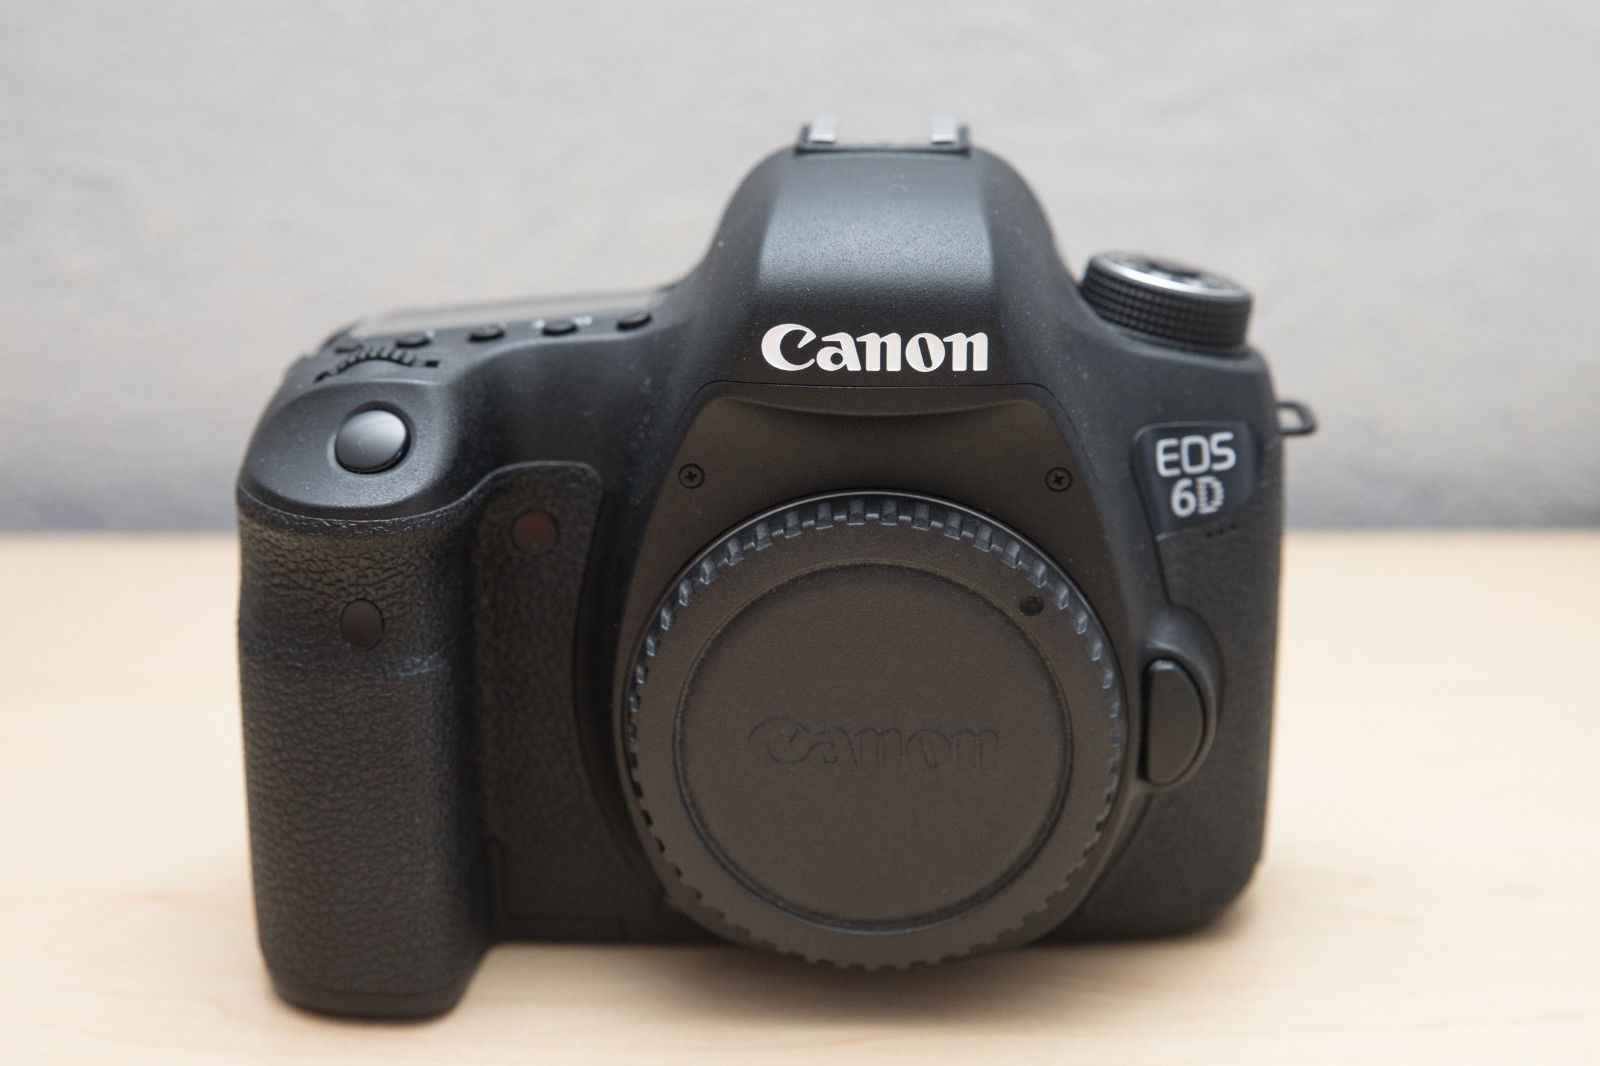 Canon EOS 6D Vollformat DSLR | WLAN & GPS | 20,2 Megapixel | OVP | TOP